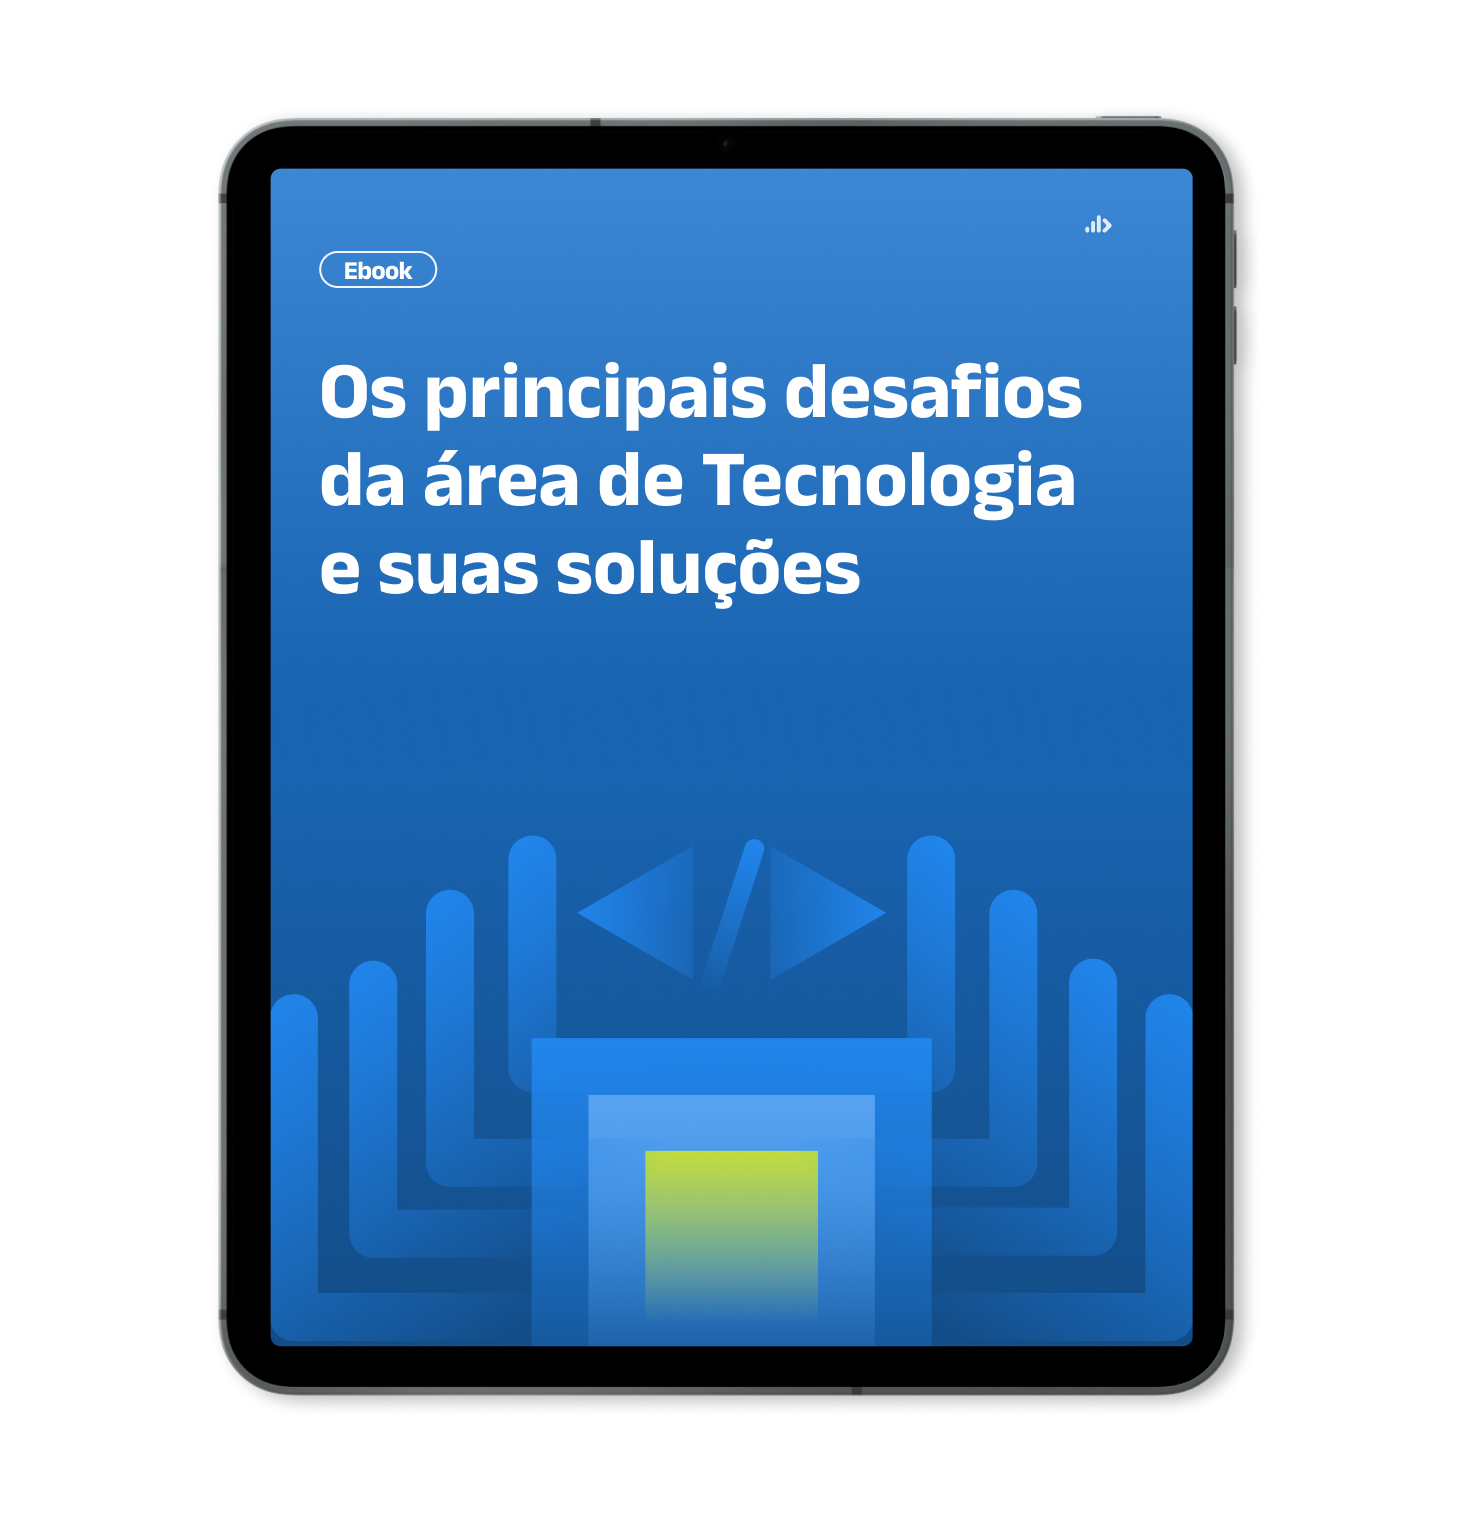 Mockup de Tablet com capa do Ebook - Os principais desafios  da área de Tecnologia  e suas soluções (1)